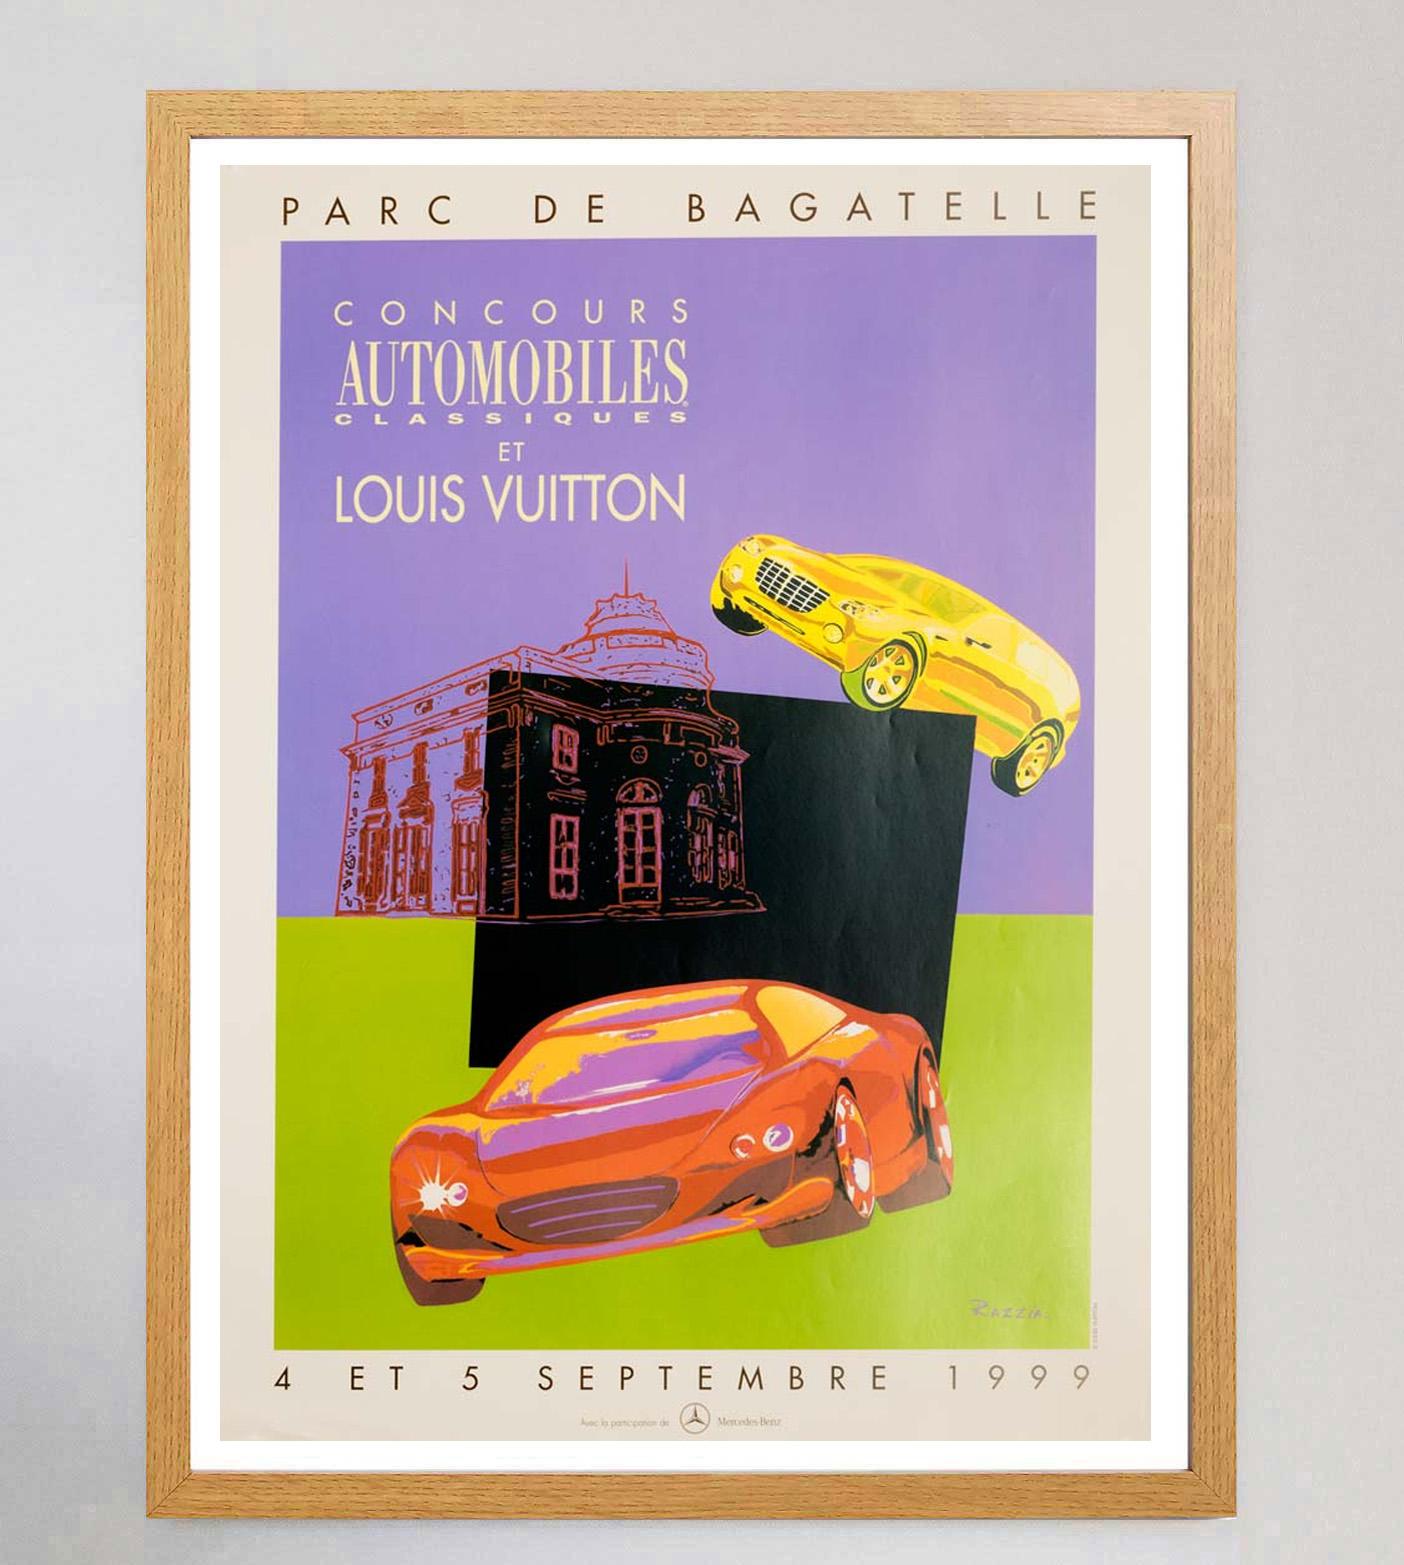 Der Louis Vuitton Bagatelle Concours Automobiles Classiques ist eine jährliche Veranstaltung, die seit 1988 im Parc de Bagatelle in Paris, Frankreich, stattfindet. Dieses schöne Stück aus dem Jahr 1999 erinnert mit seinen leuchtenden Pastellfarben